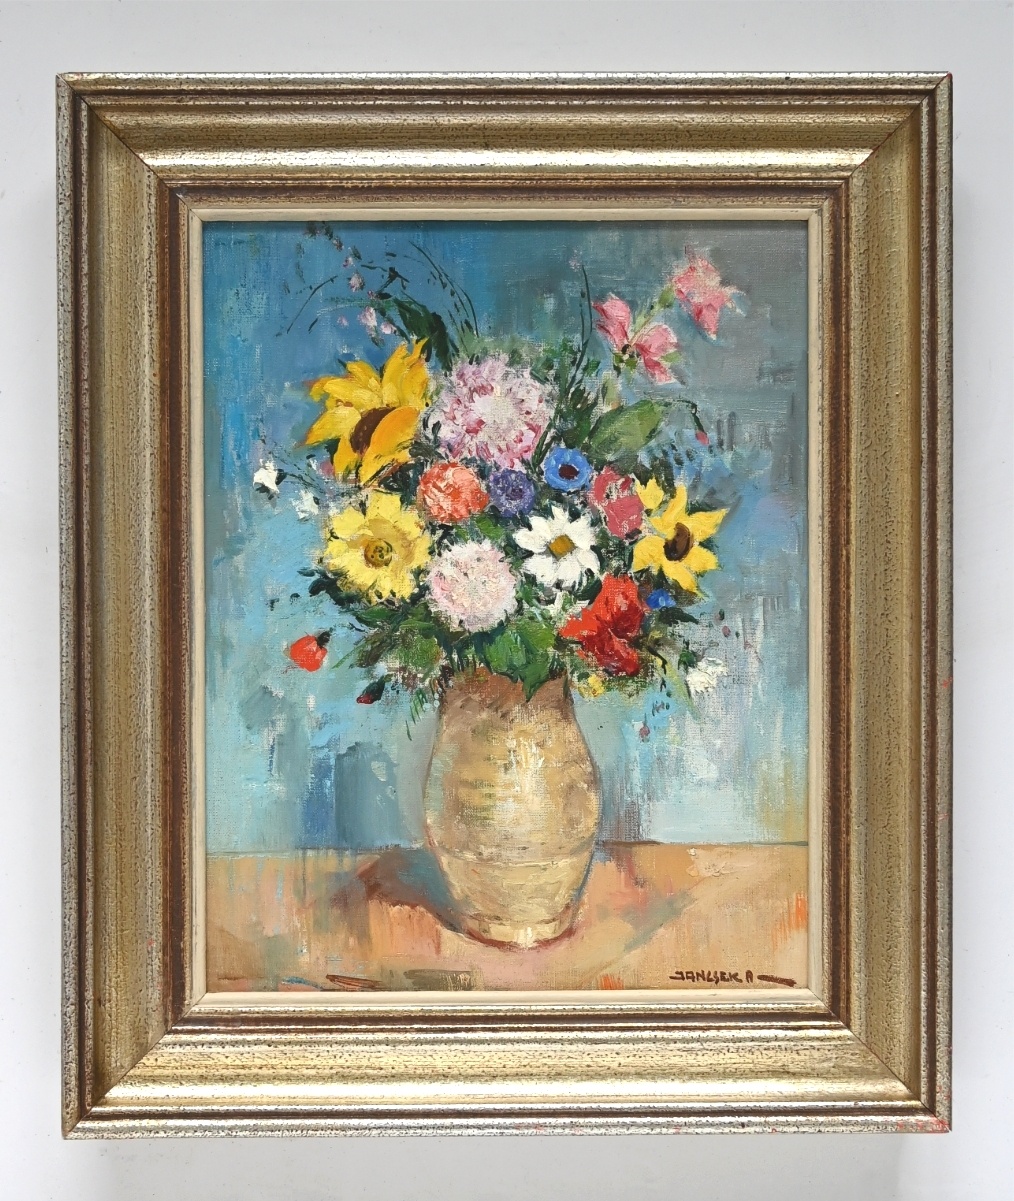 Antal JancseAntal Jancsek (1907 - 1985) » Öl-Gemälde Postimpressionismus Blumen Blumenstillleben Blumenstrauß Stillleben ungarischer Maler